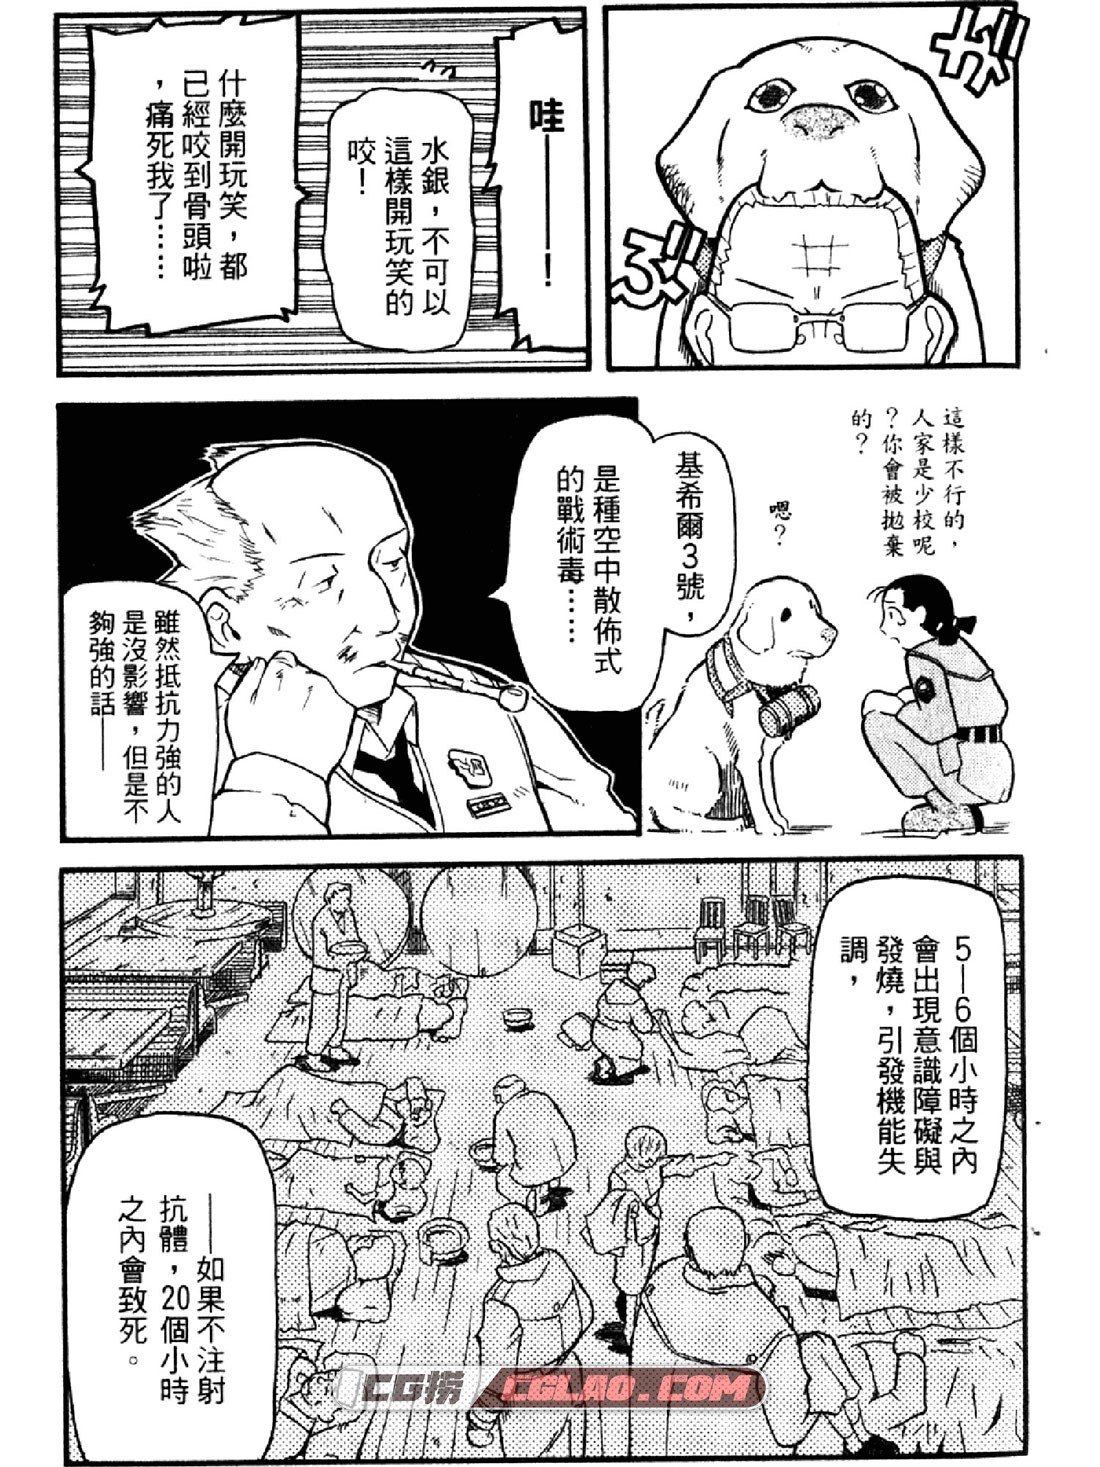 非战特工队 陆军情报三课 岩永亮太郎 1-16卷 漫画网盘下载,0041.jpg